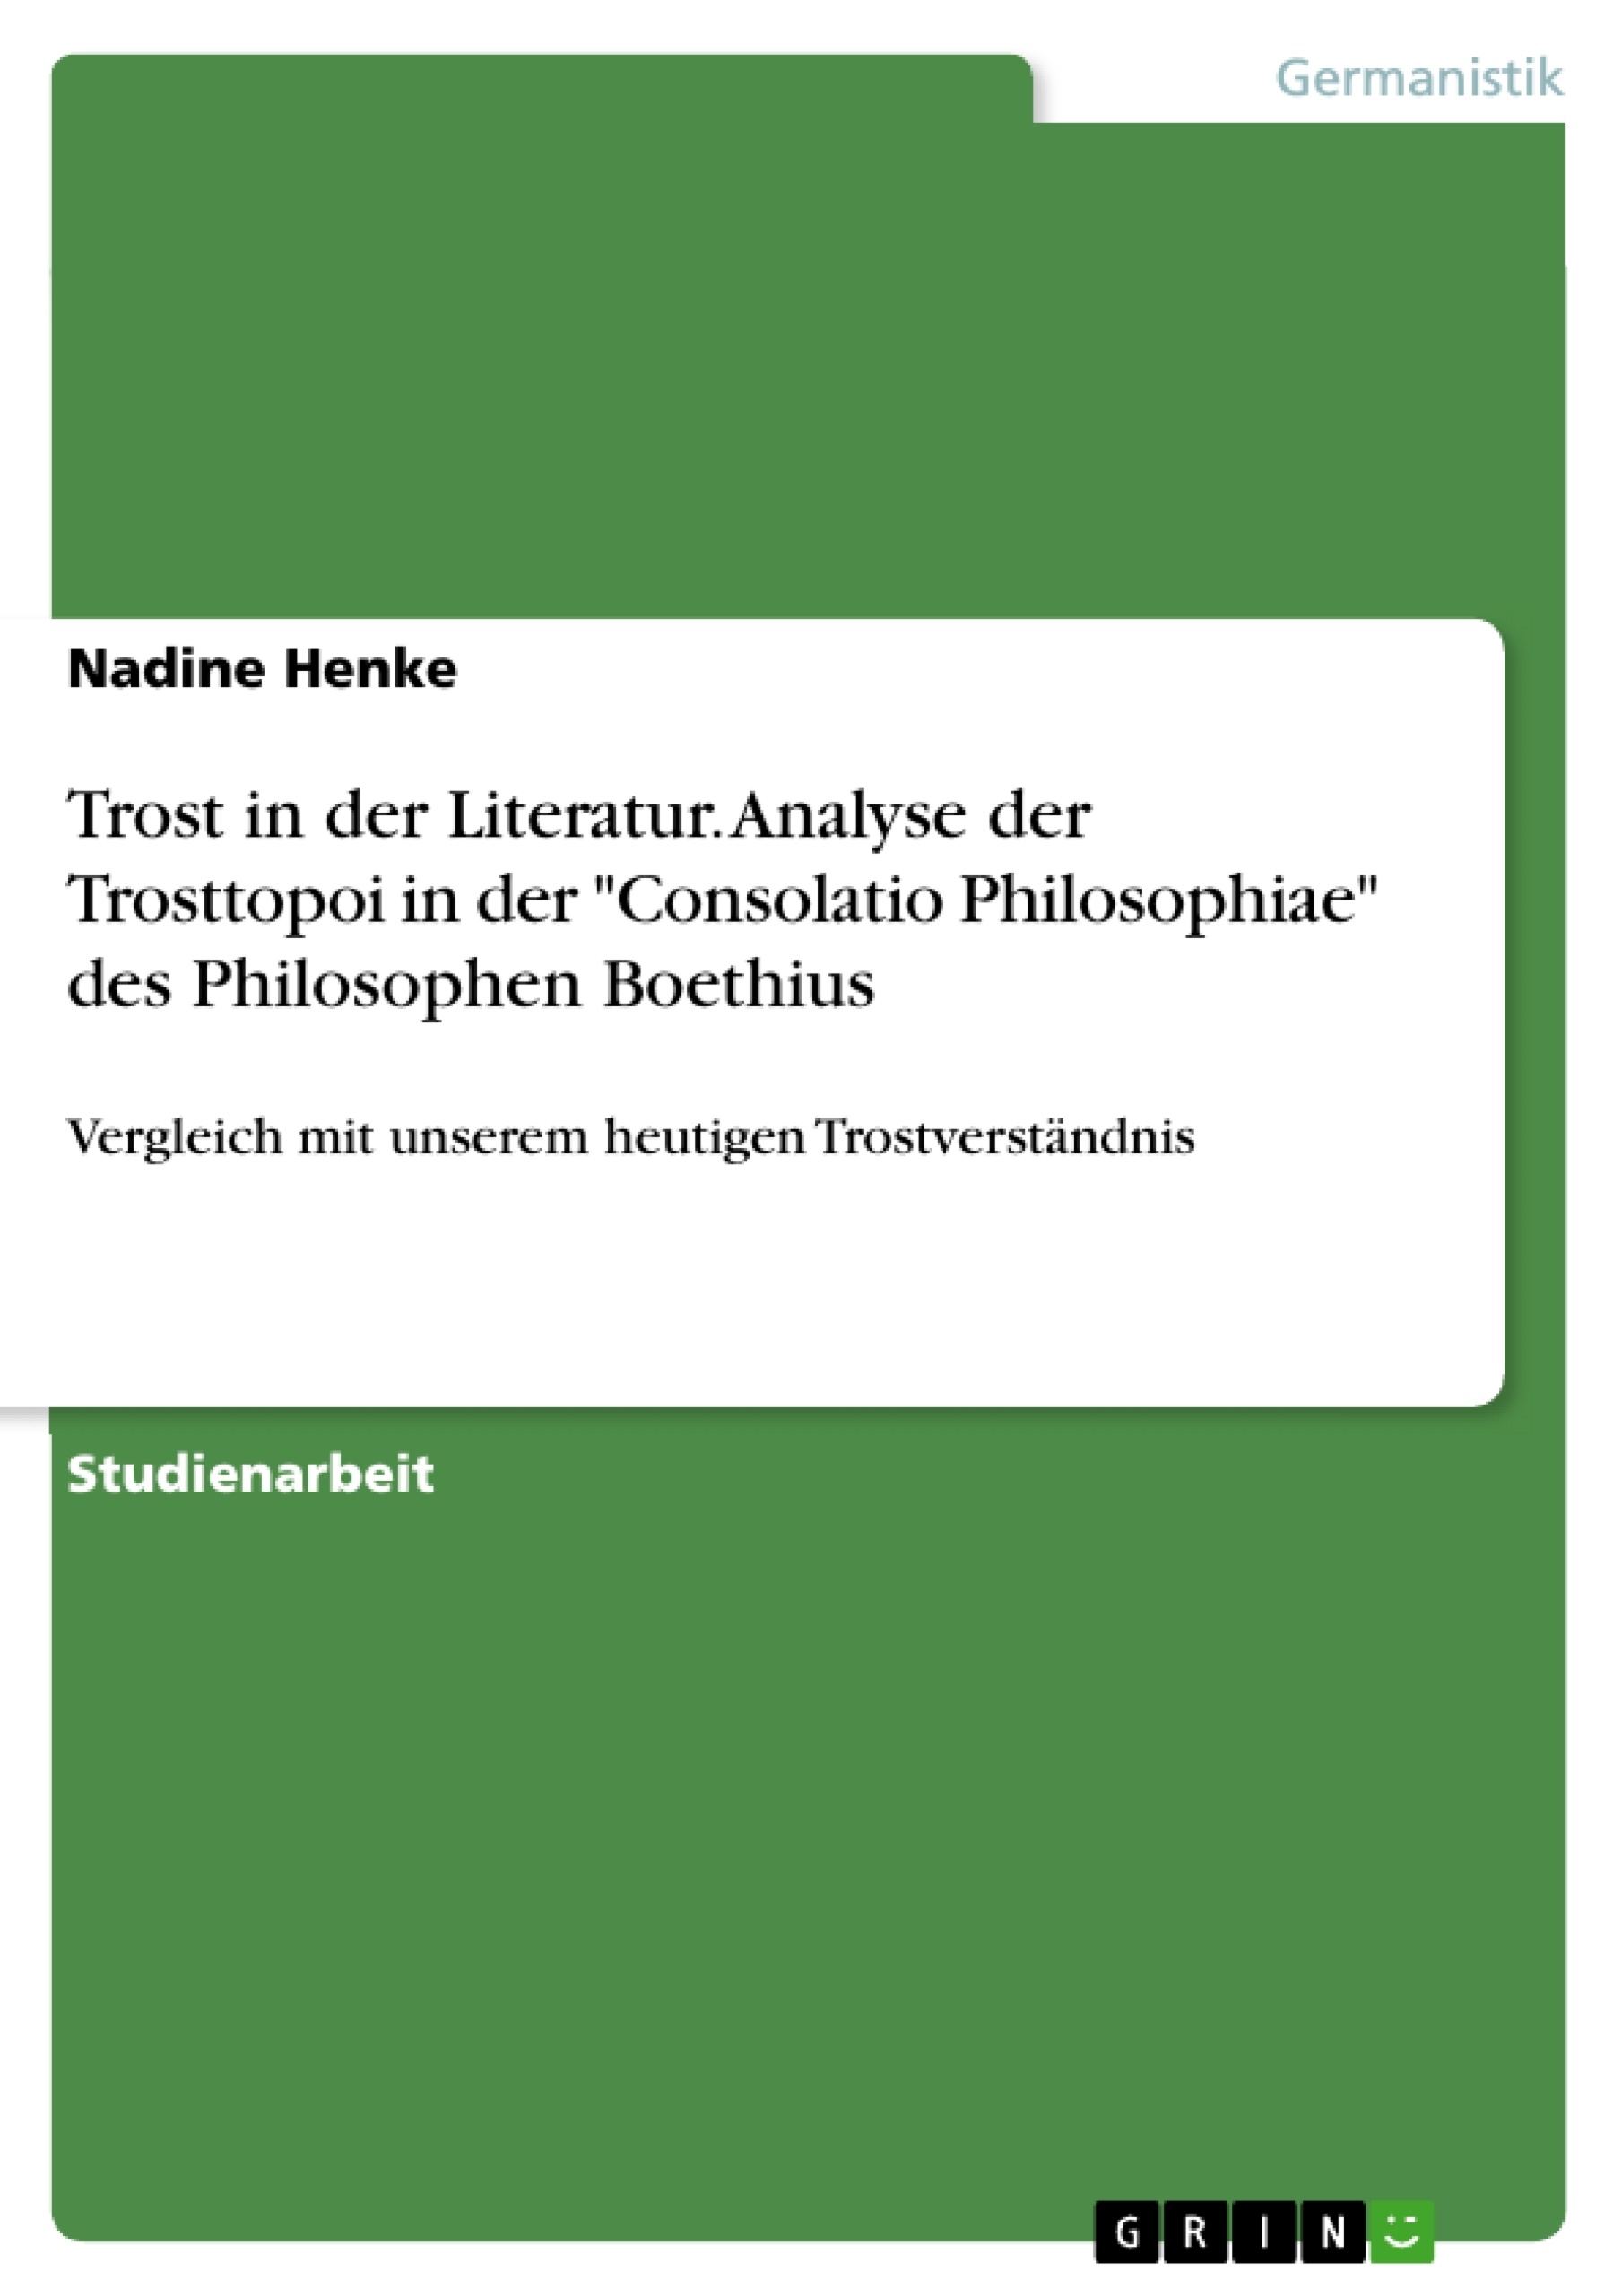 Título: Trost in der Literatur. Analyse der Trosttopoi in der "Consolatio Philosophiae" des Philosophen Boethius